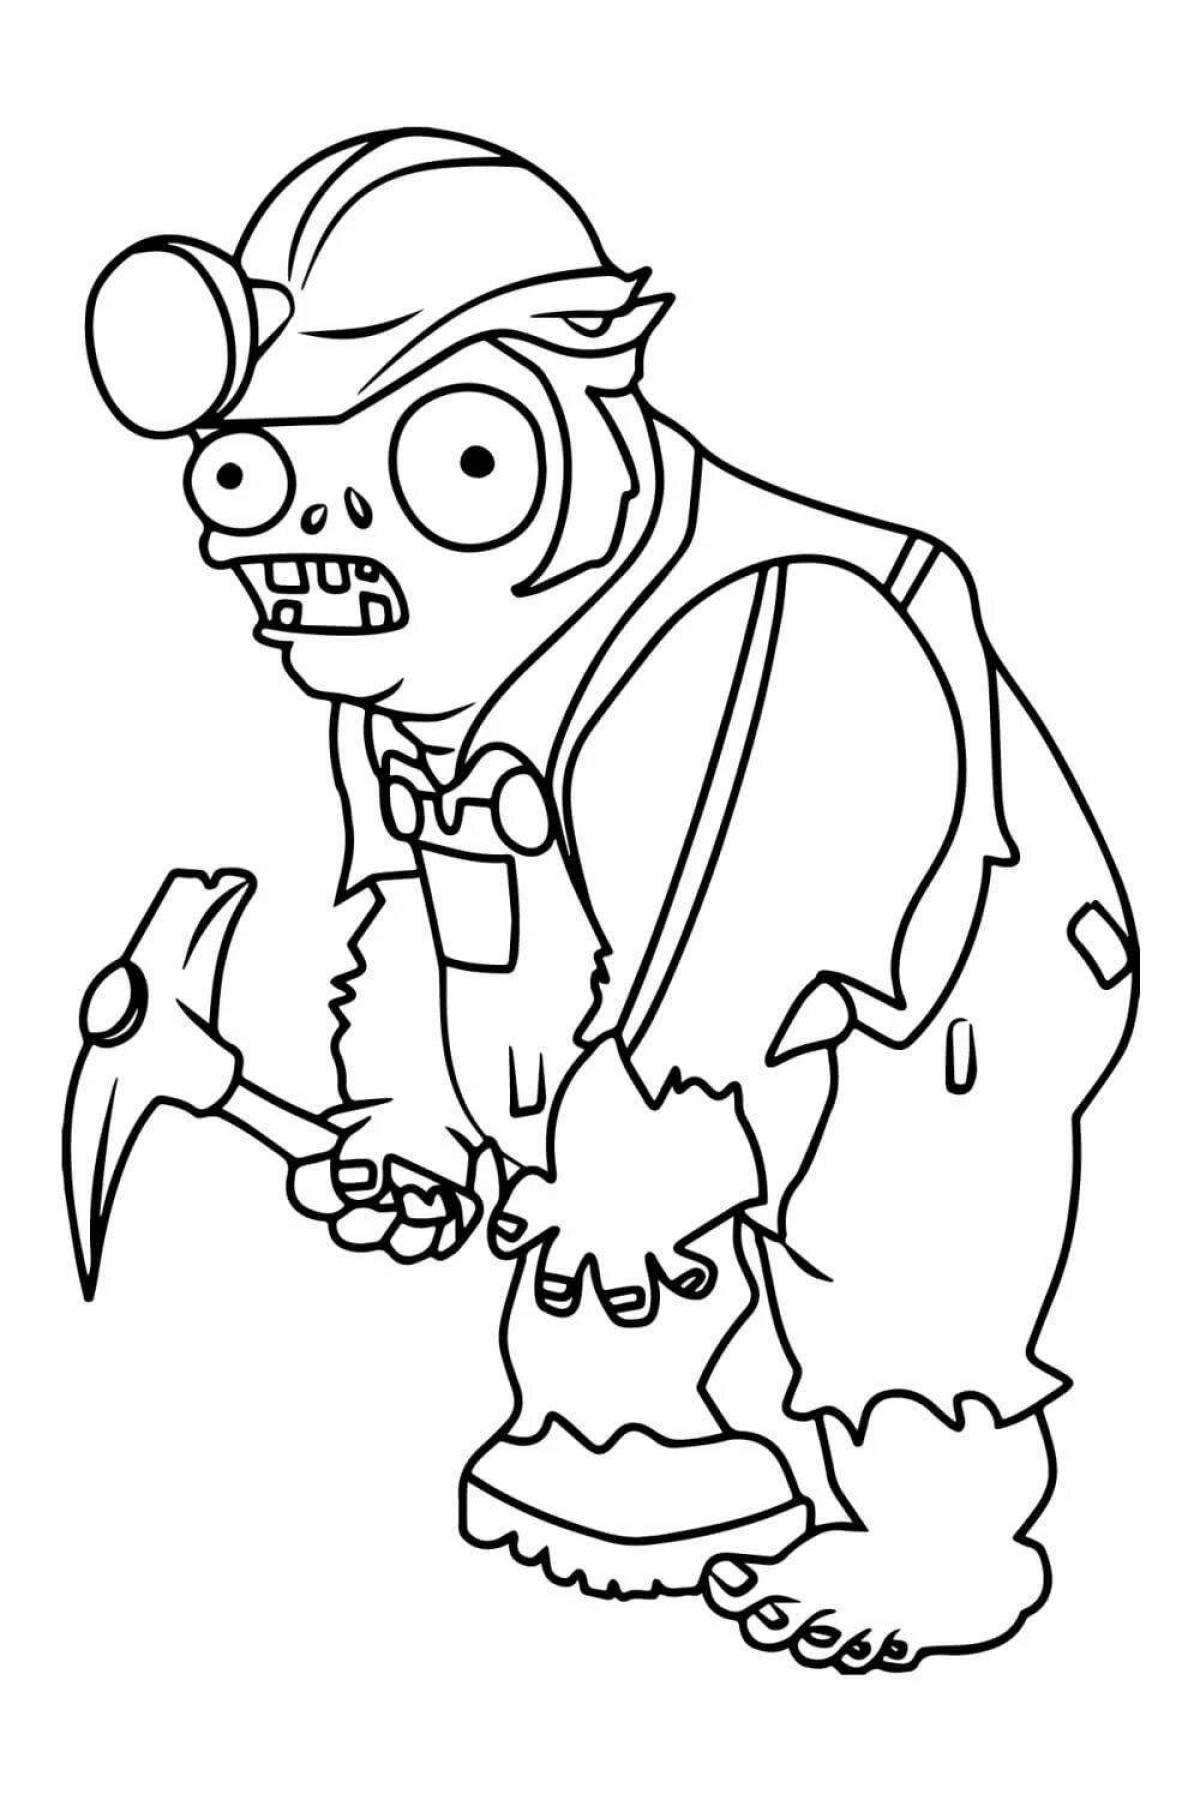 Забавная раскраска доктор зомбибосс